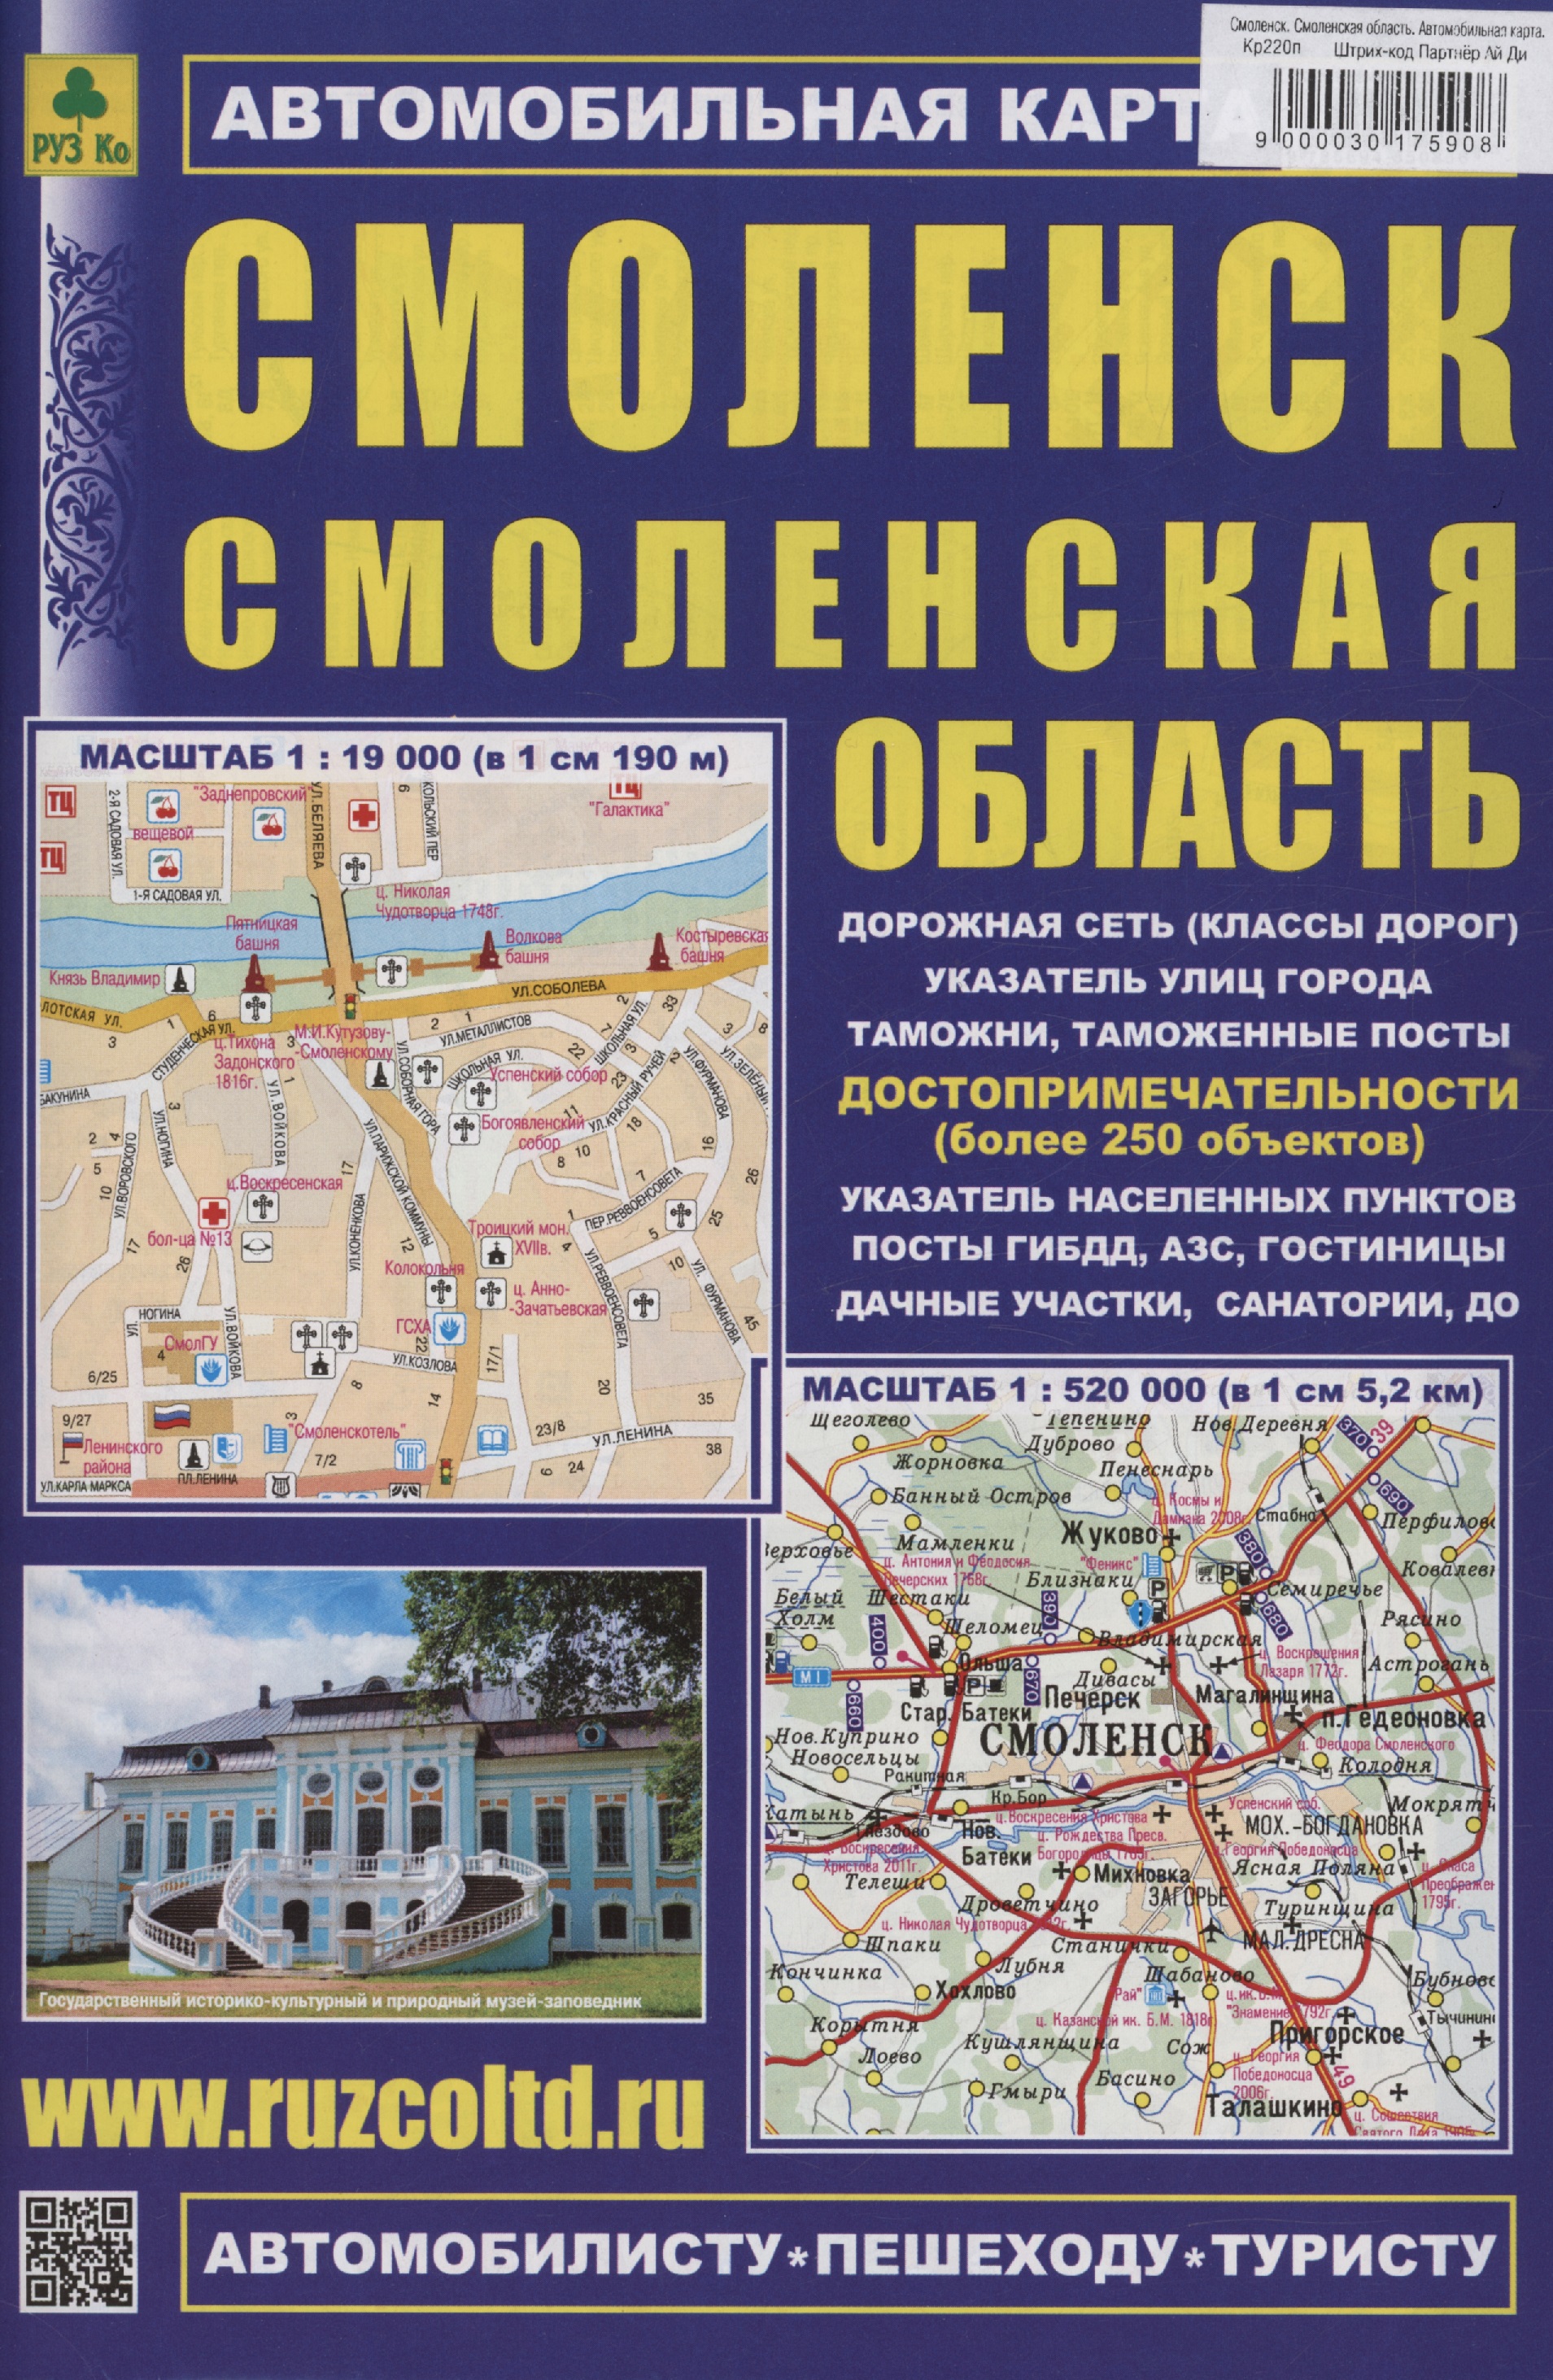 Смоленск. Смоленская область. Автомобильная карта (М1:19 000/1:8 000/ 1:520 000)